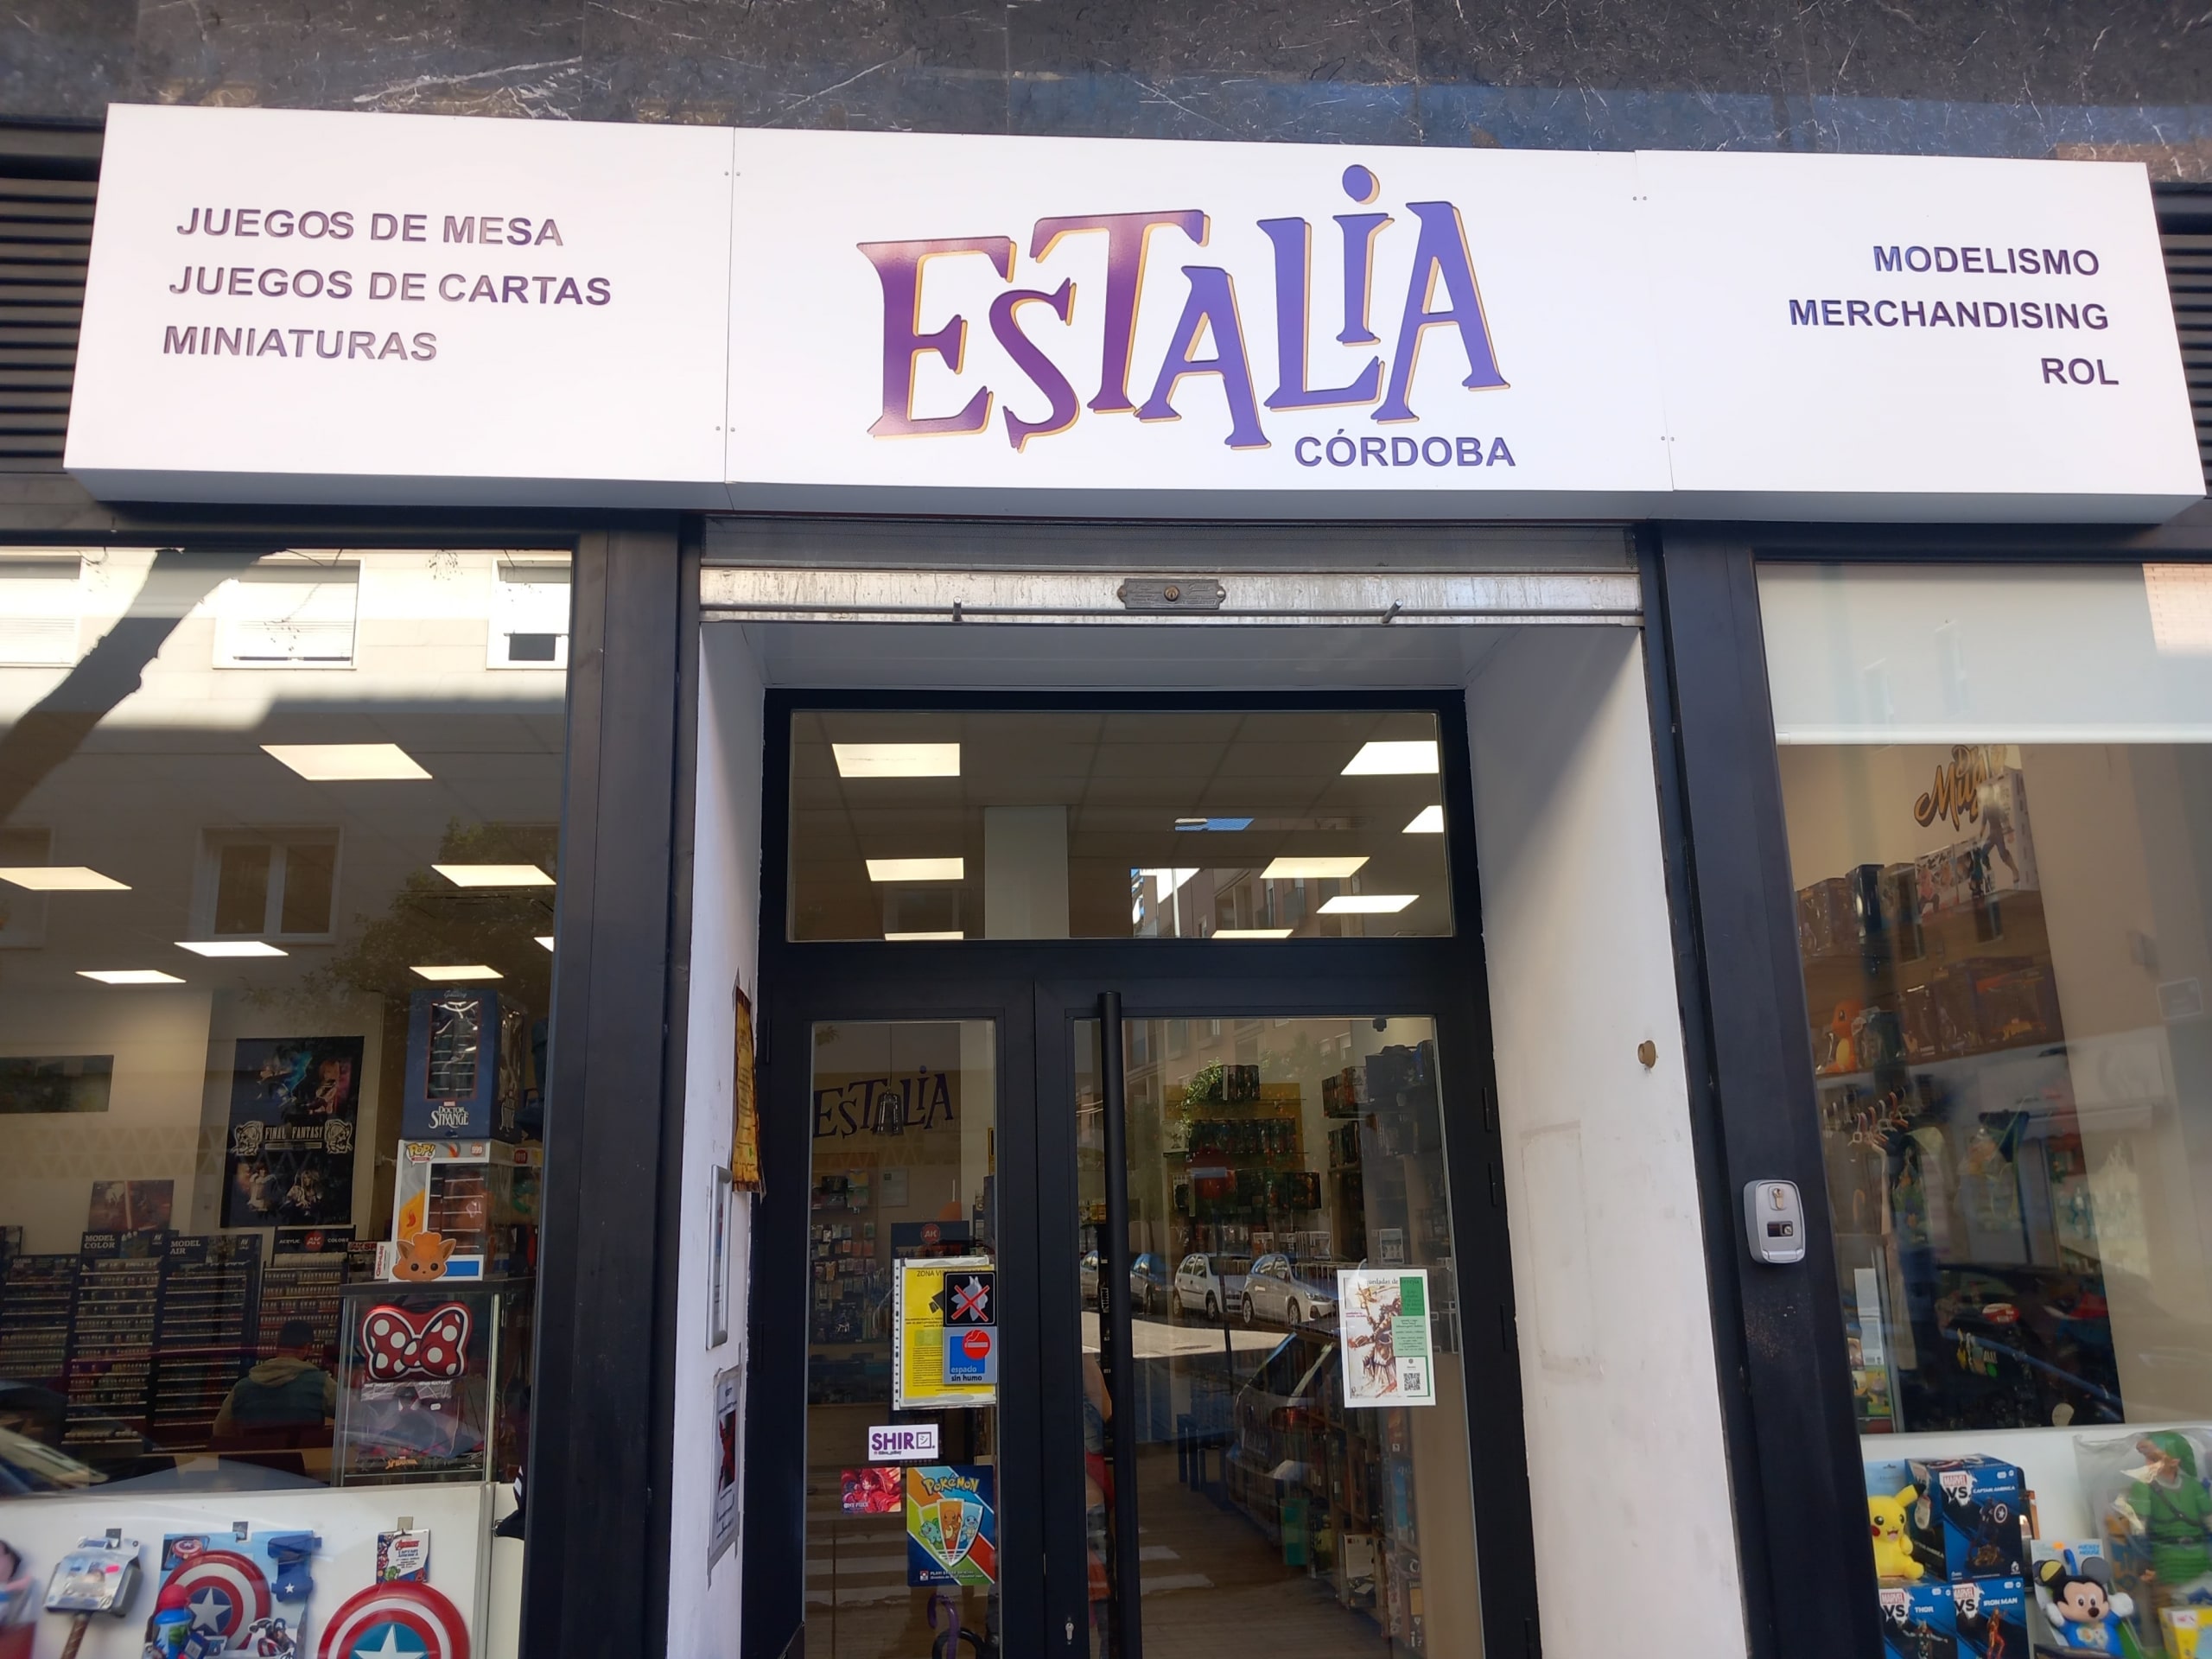 Estalia Córdoba. Negozio di hobbistica. Foto dell'ingresso del negozio.